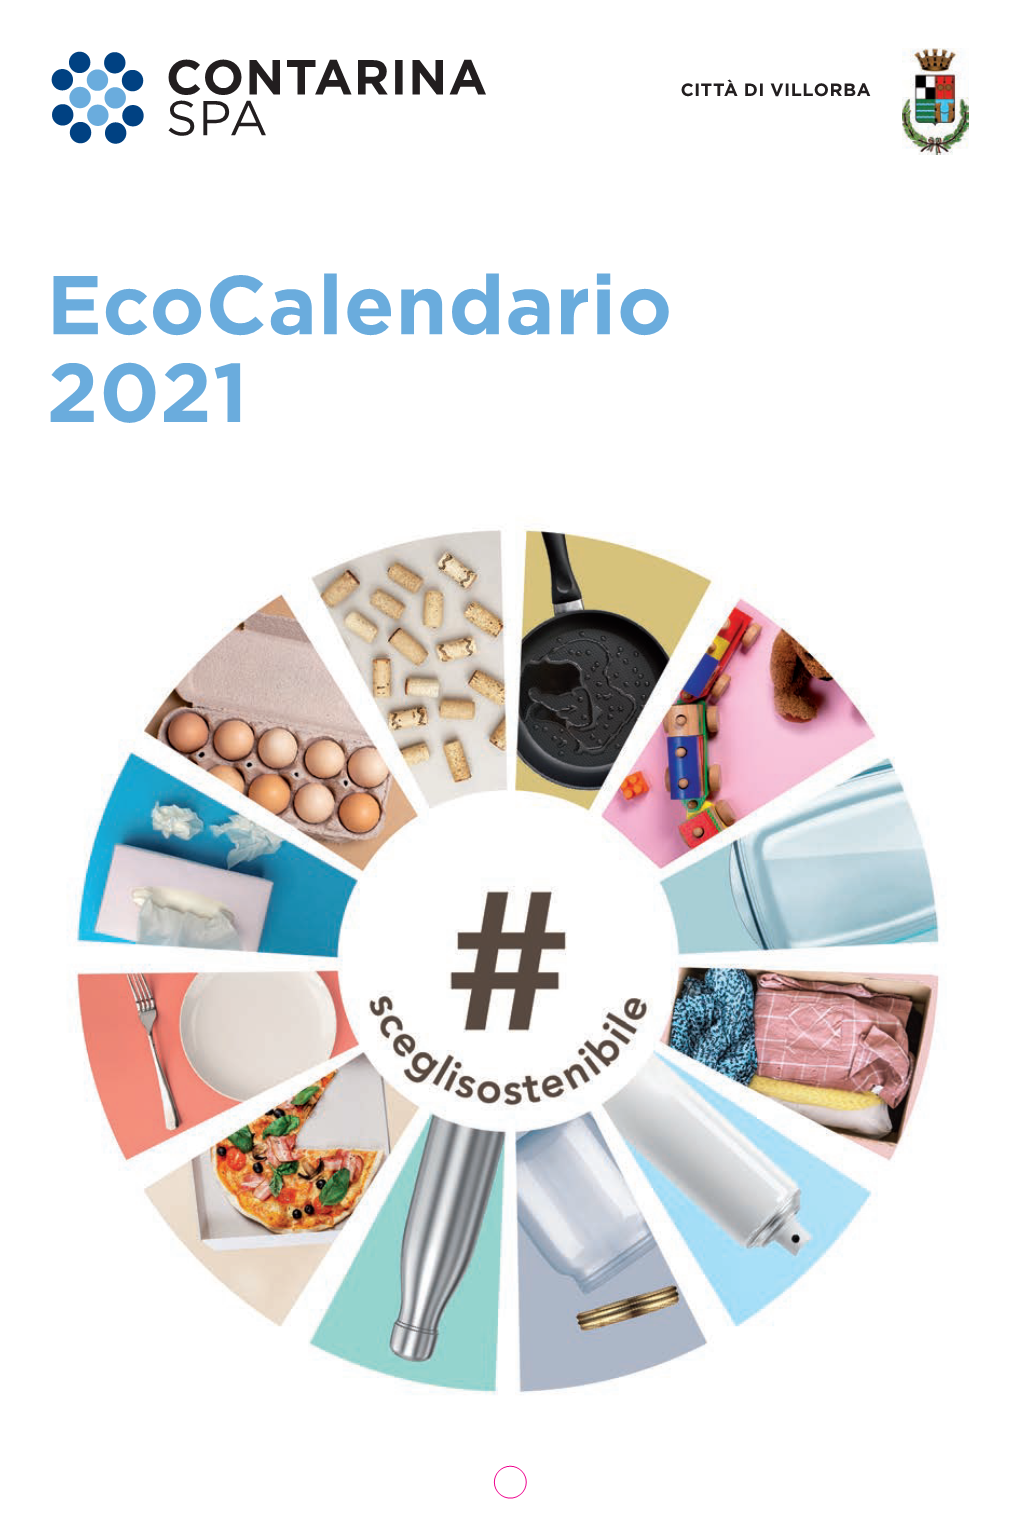 Ecocalendario 2021 CITTÀ DI VILLORBA